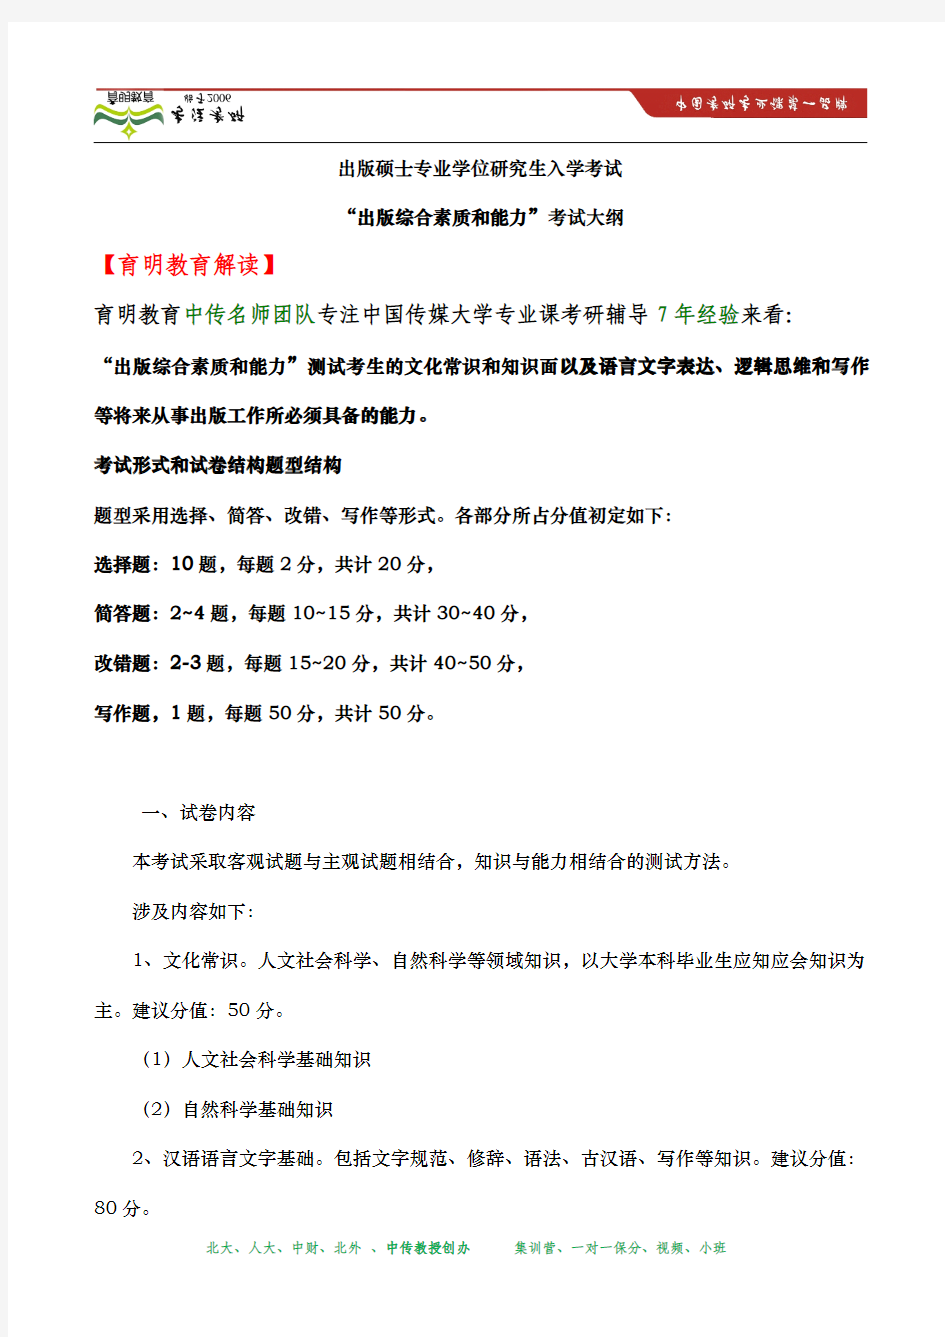 2014年 中国传媒大学研究生院硕士研究生入学考试“出版综合素质和能力”考试大纲